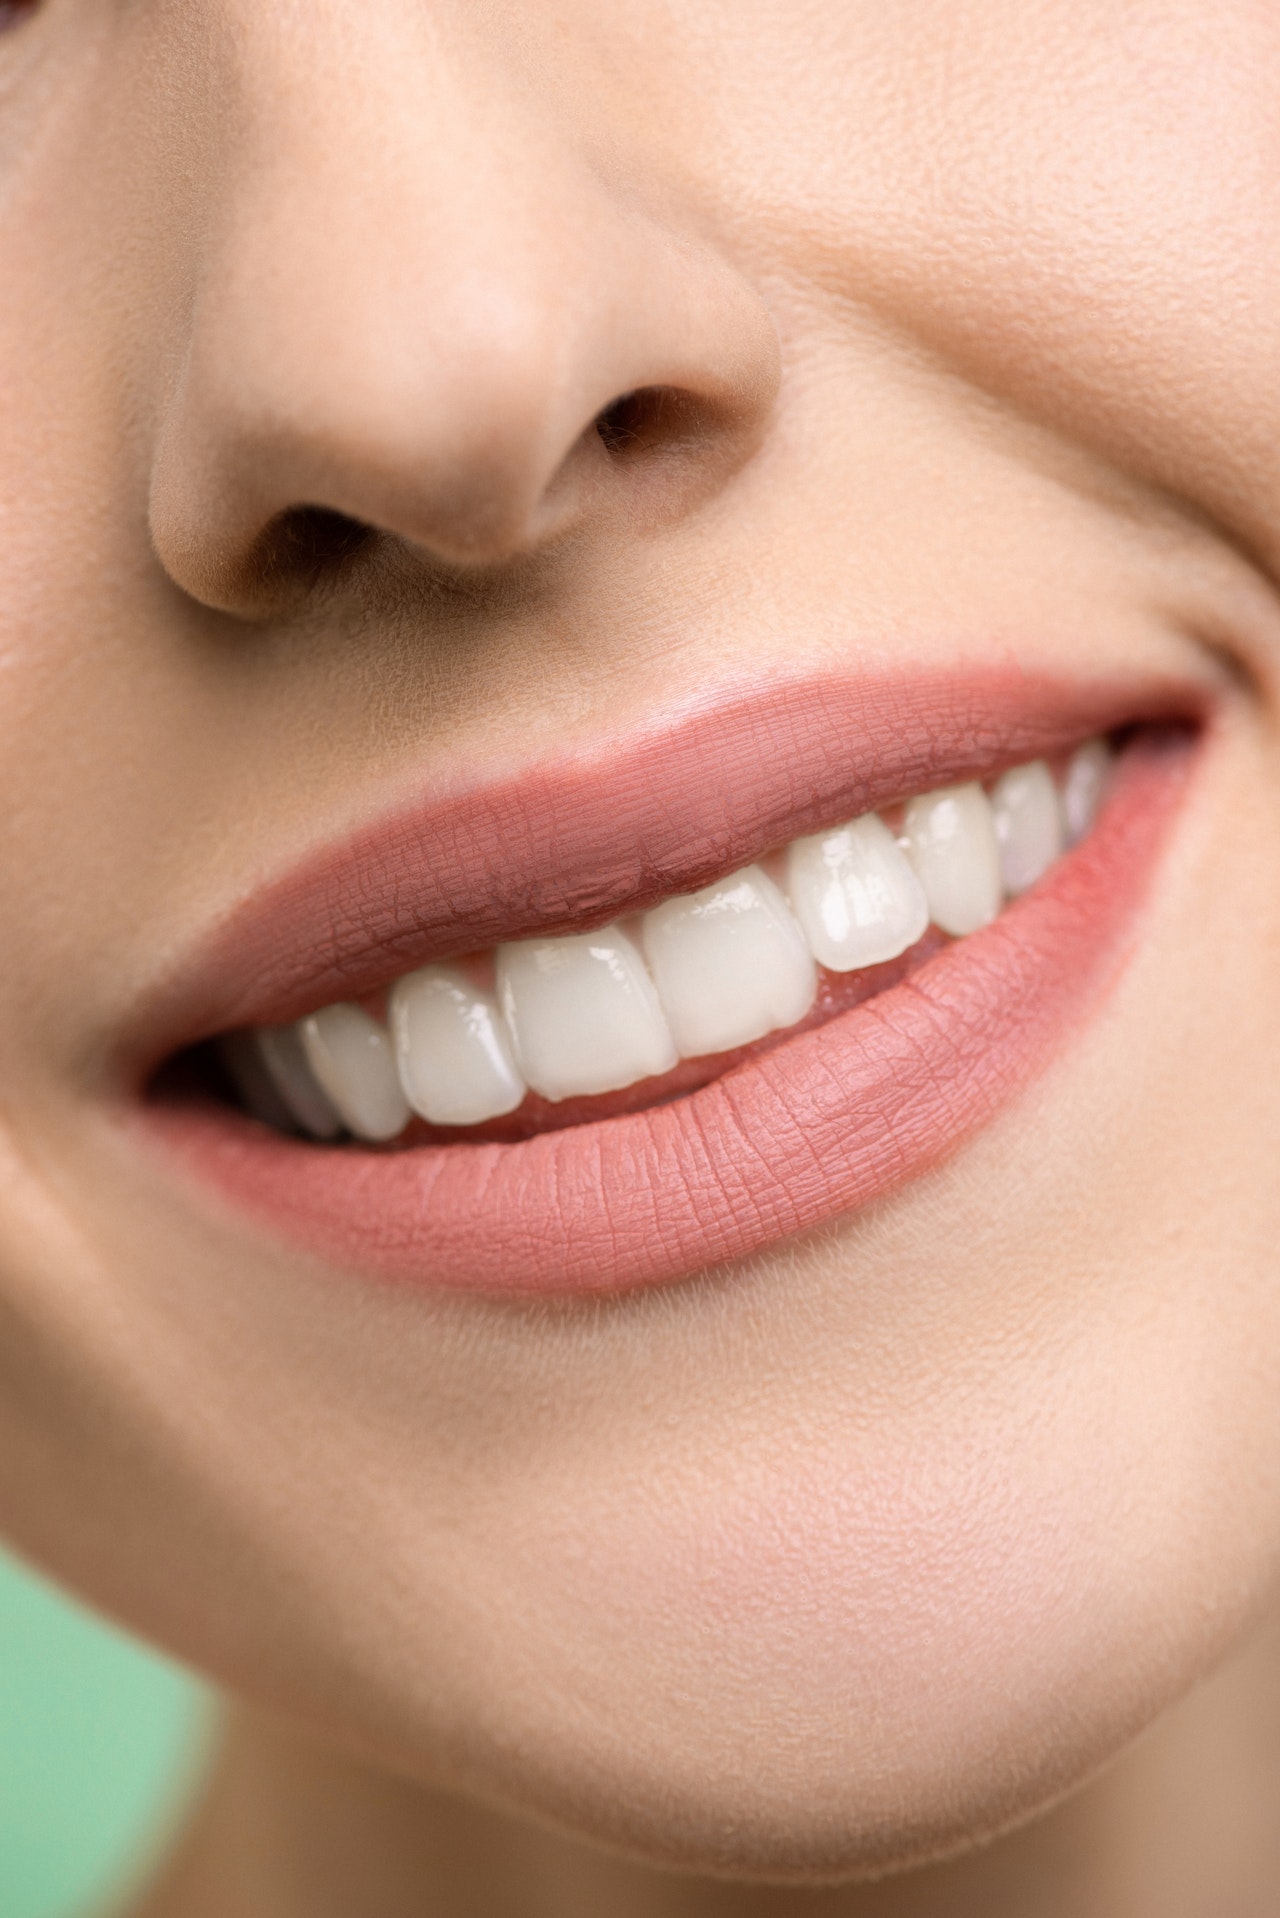 Τα λευκά δόντια φανερώνουν υγεία- Τι πρέπει να γνωρίζεις για τις οδοντόκρεμες με ενεργό άνθρακα